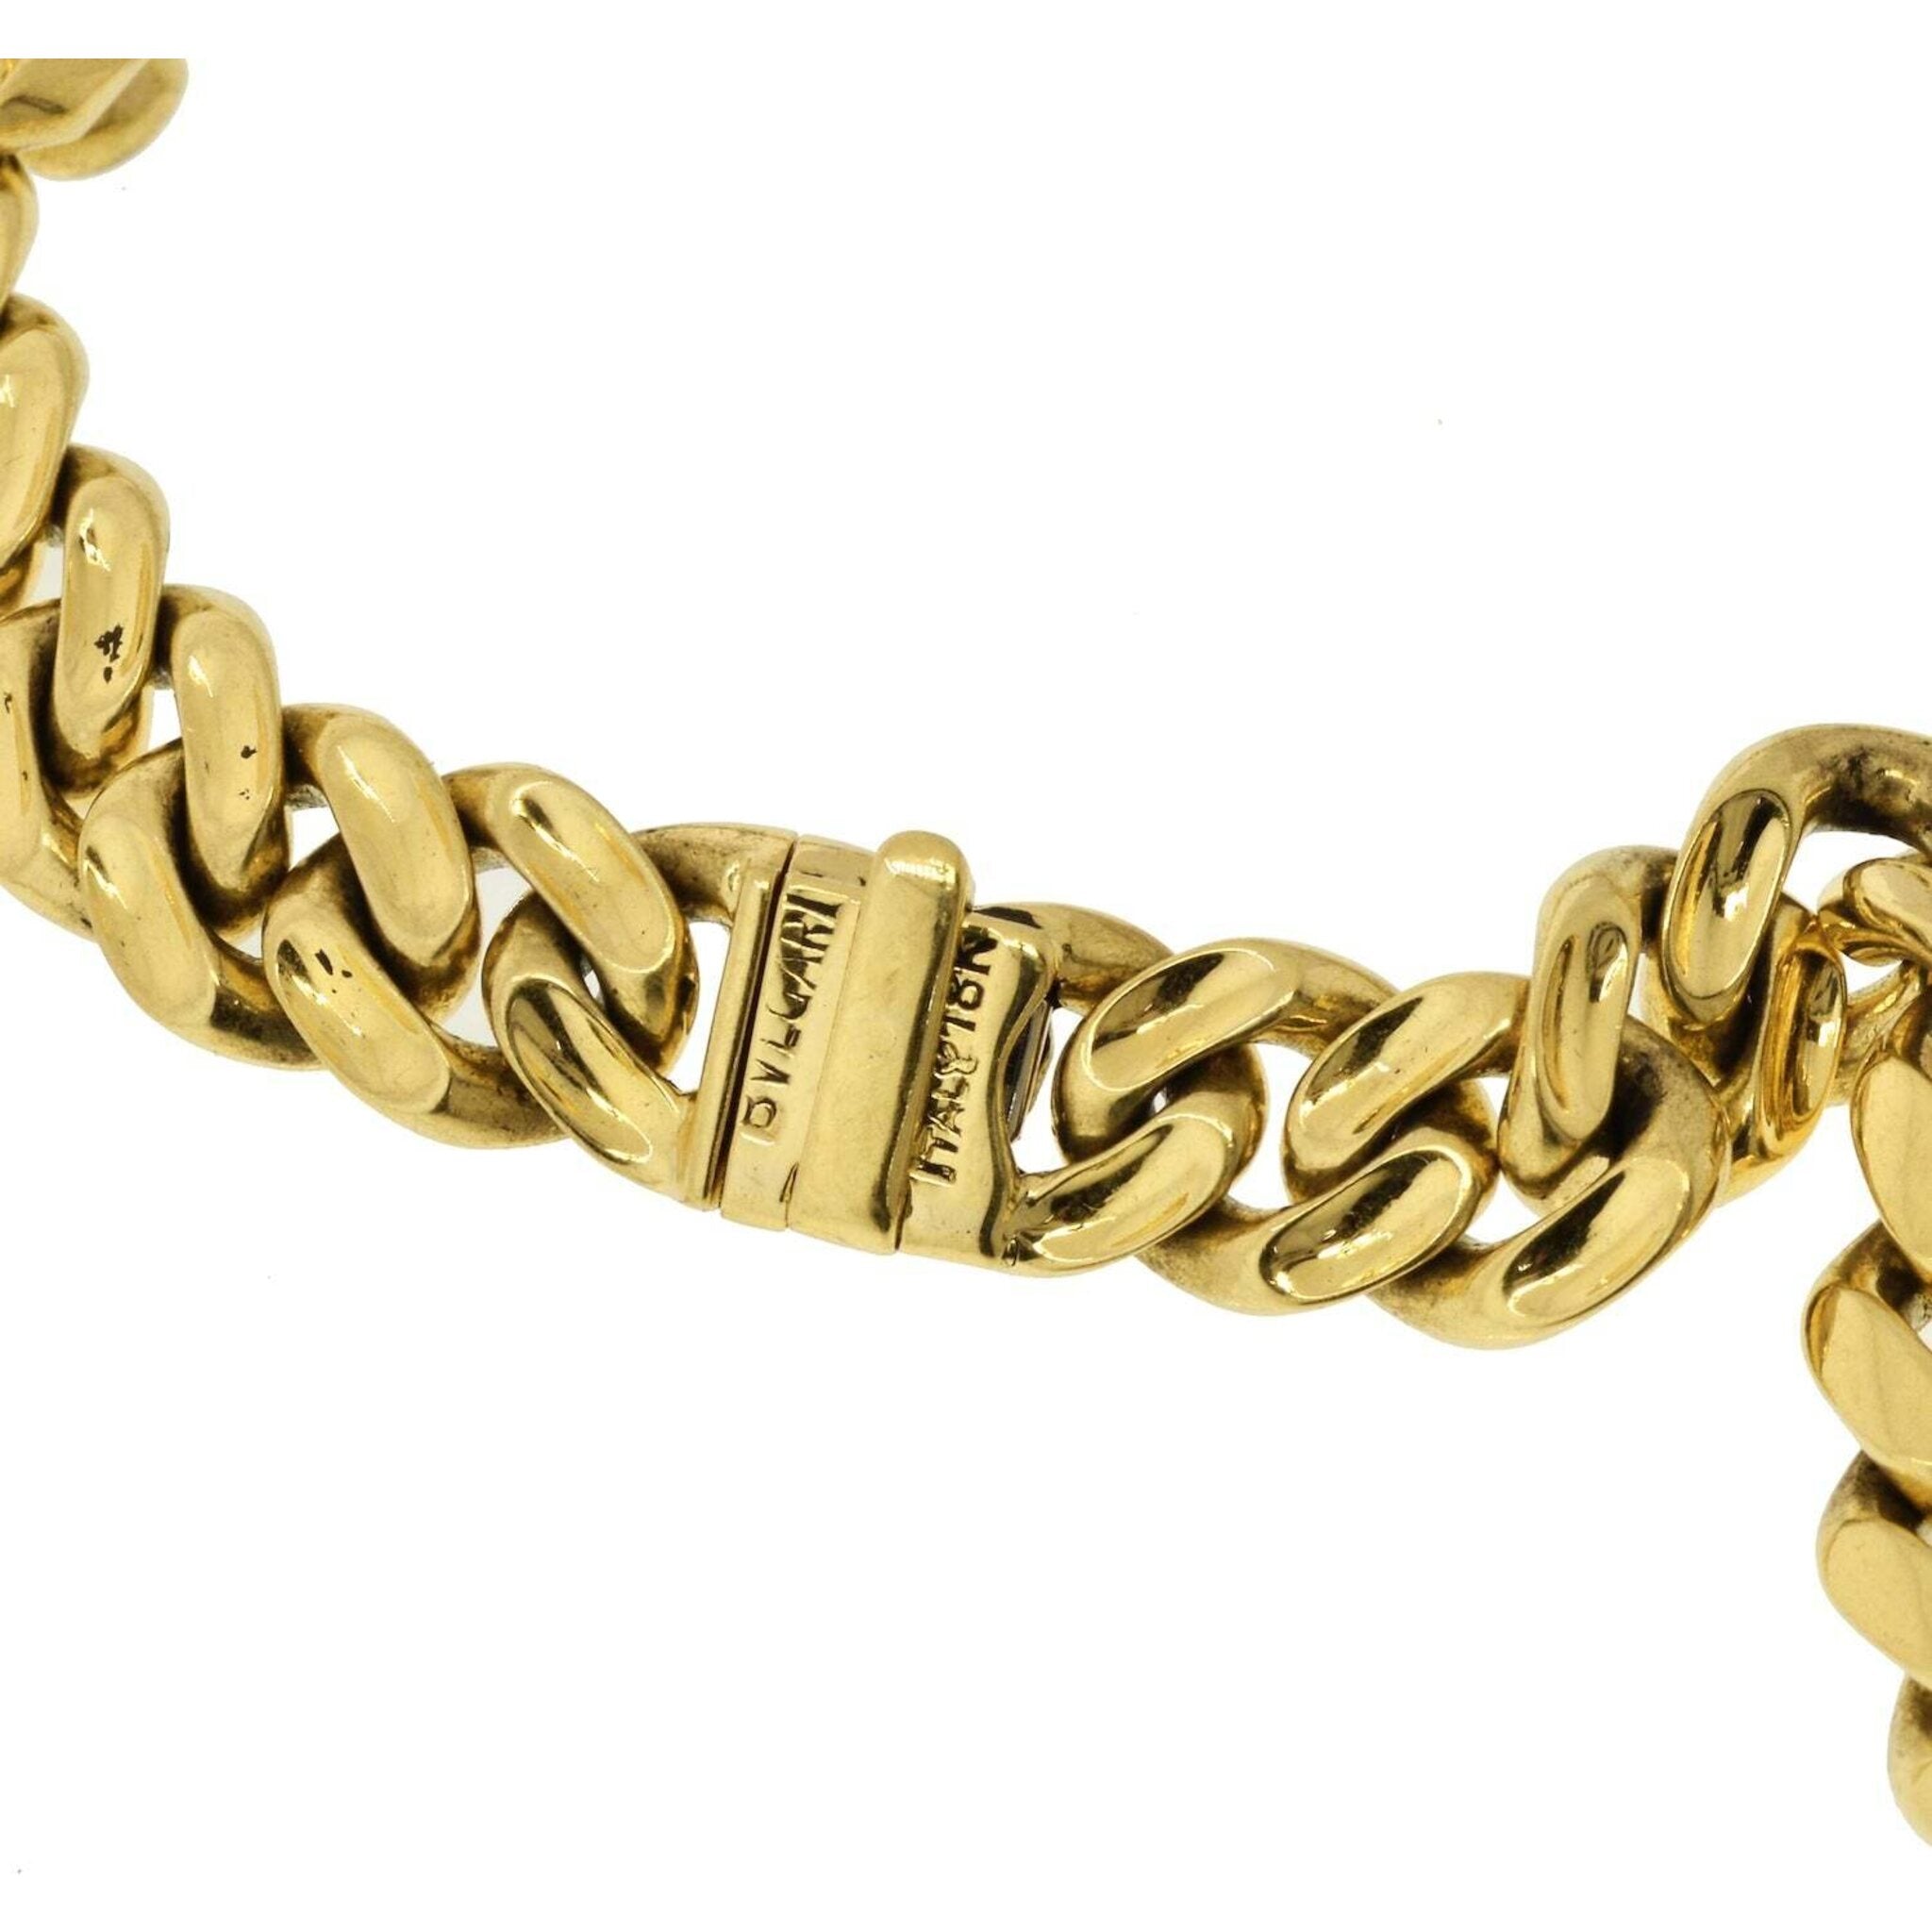 Bulgari - 18K Yellow Gold Amethyst Cushion Cut Curb-Link Chain Necklace